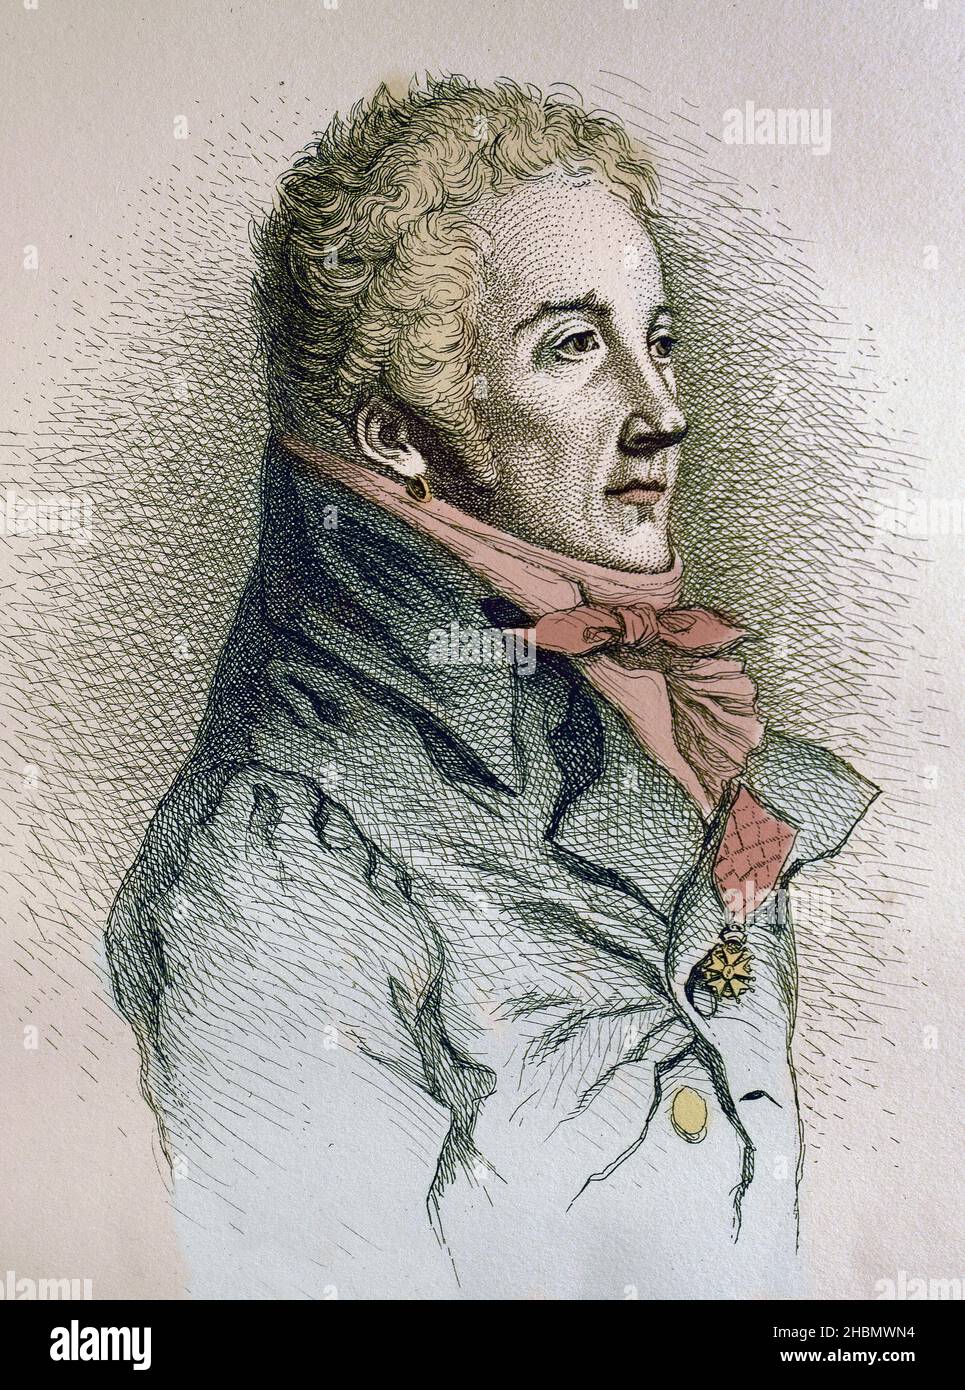 Nicolas Dalayrac, compositor francés, 1753 - 1809 - grabado Foto de stock